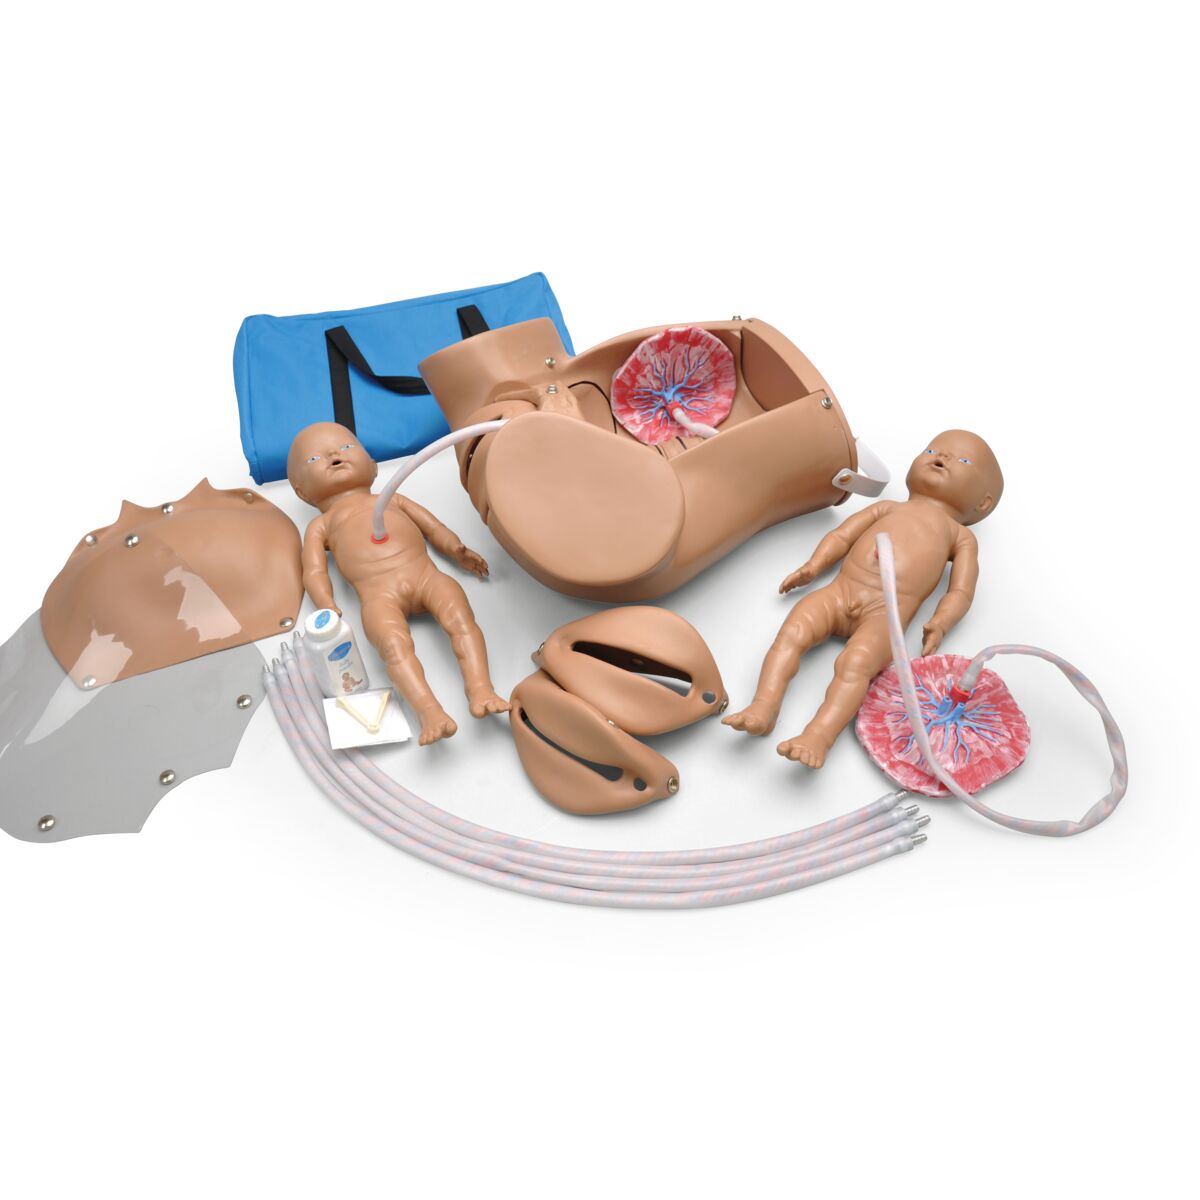 3B Birthing Simulator Pro, Light Skin - 1022879 - 3B Scientific